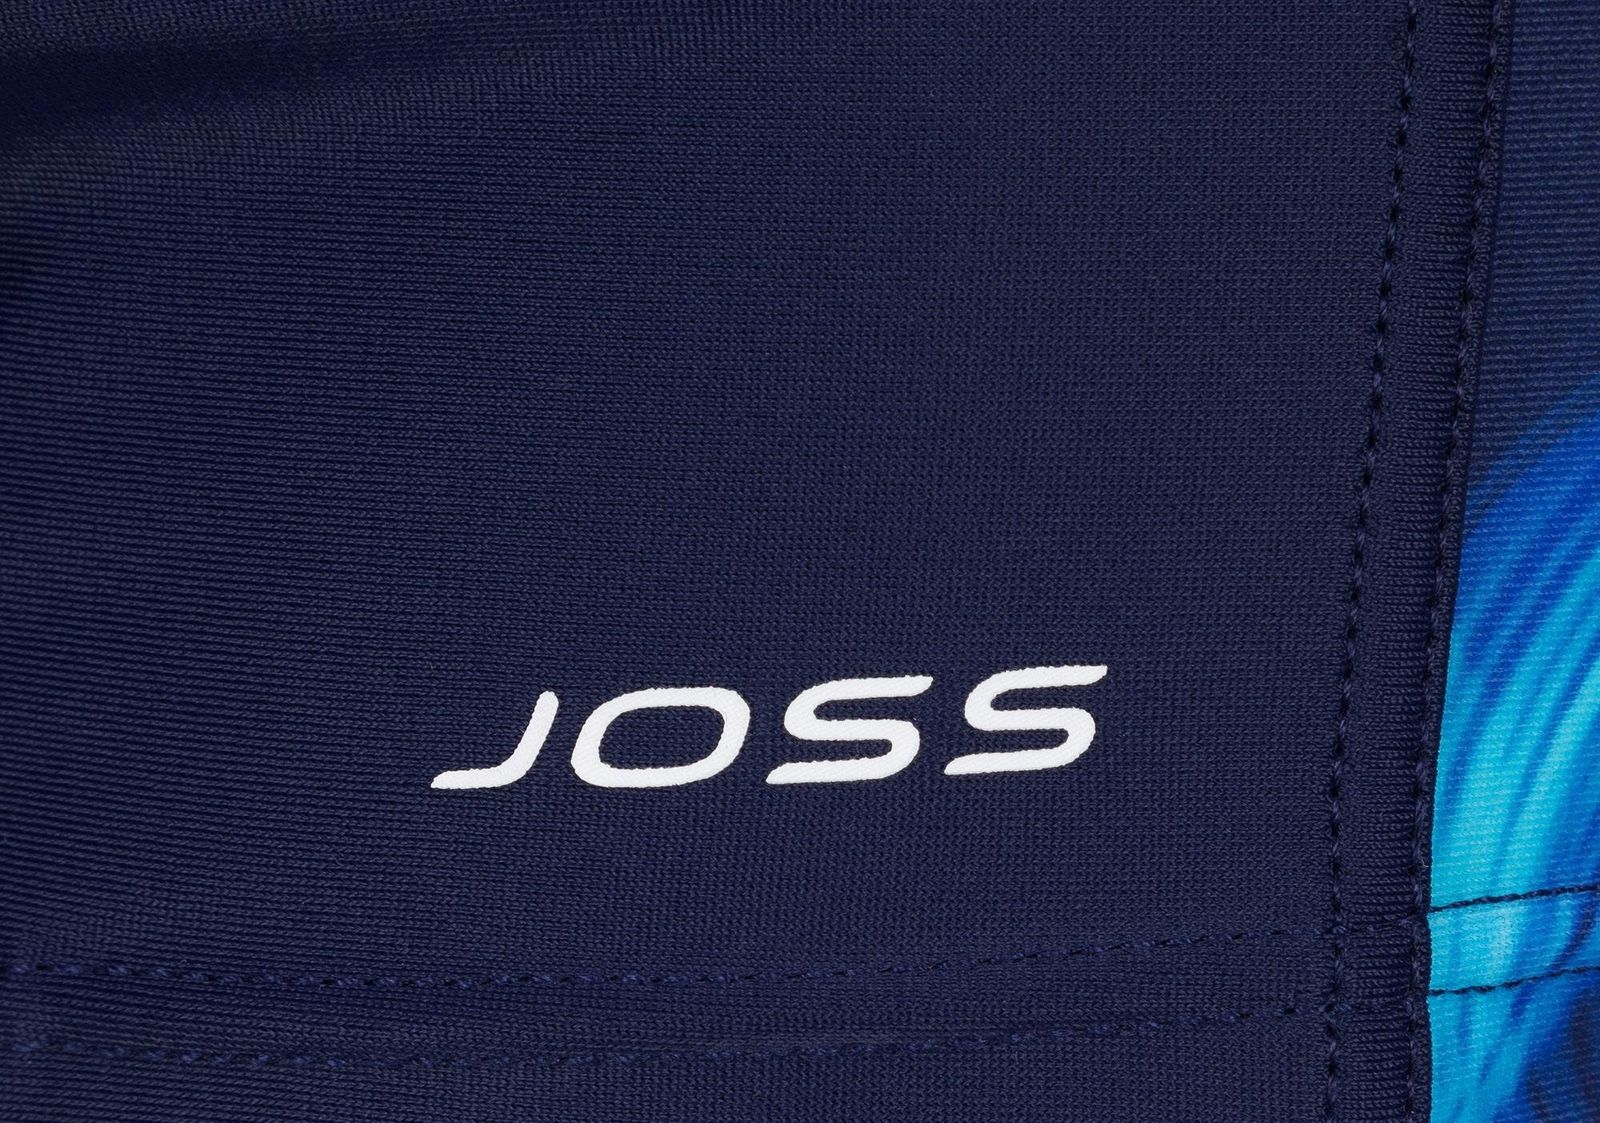    Joss Boys' Swim Trunks, : , . BSX04S6-MQ.  128